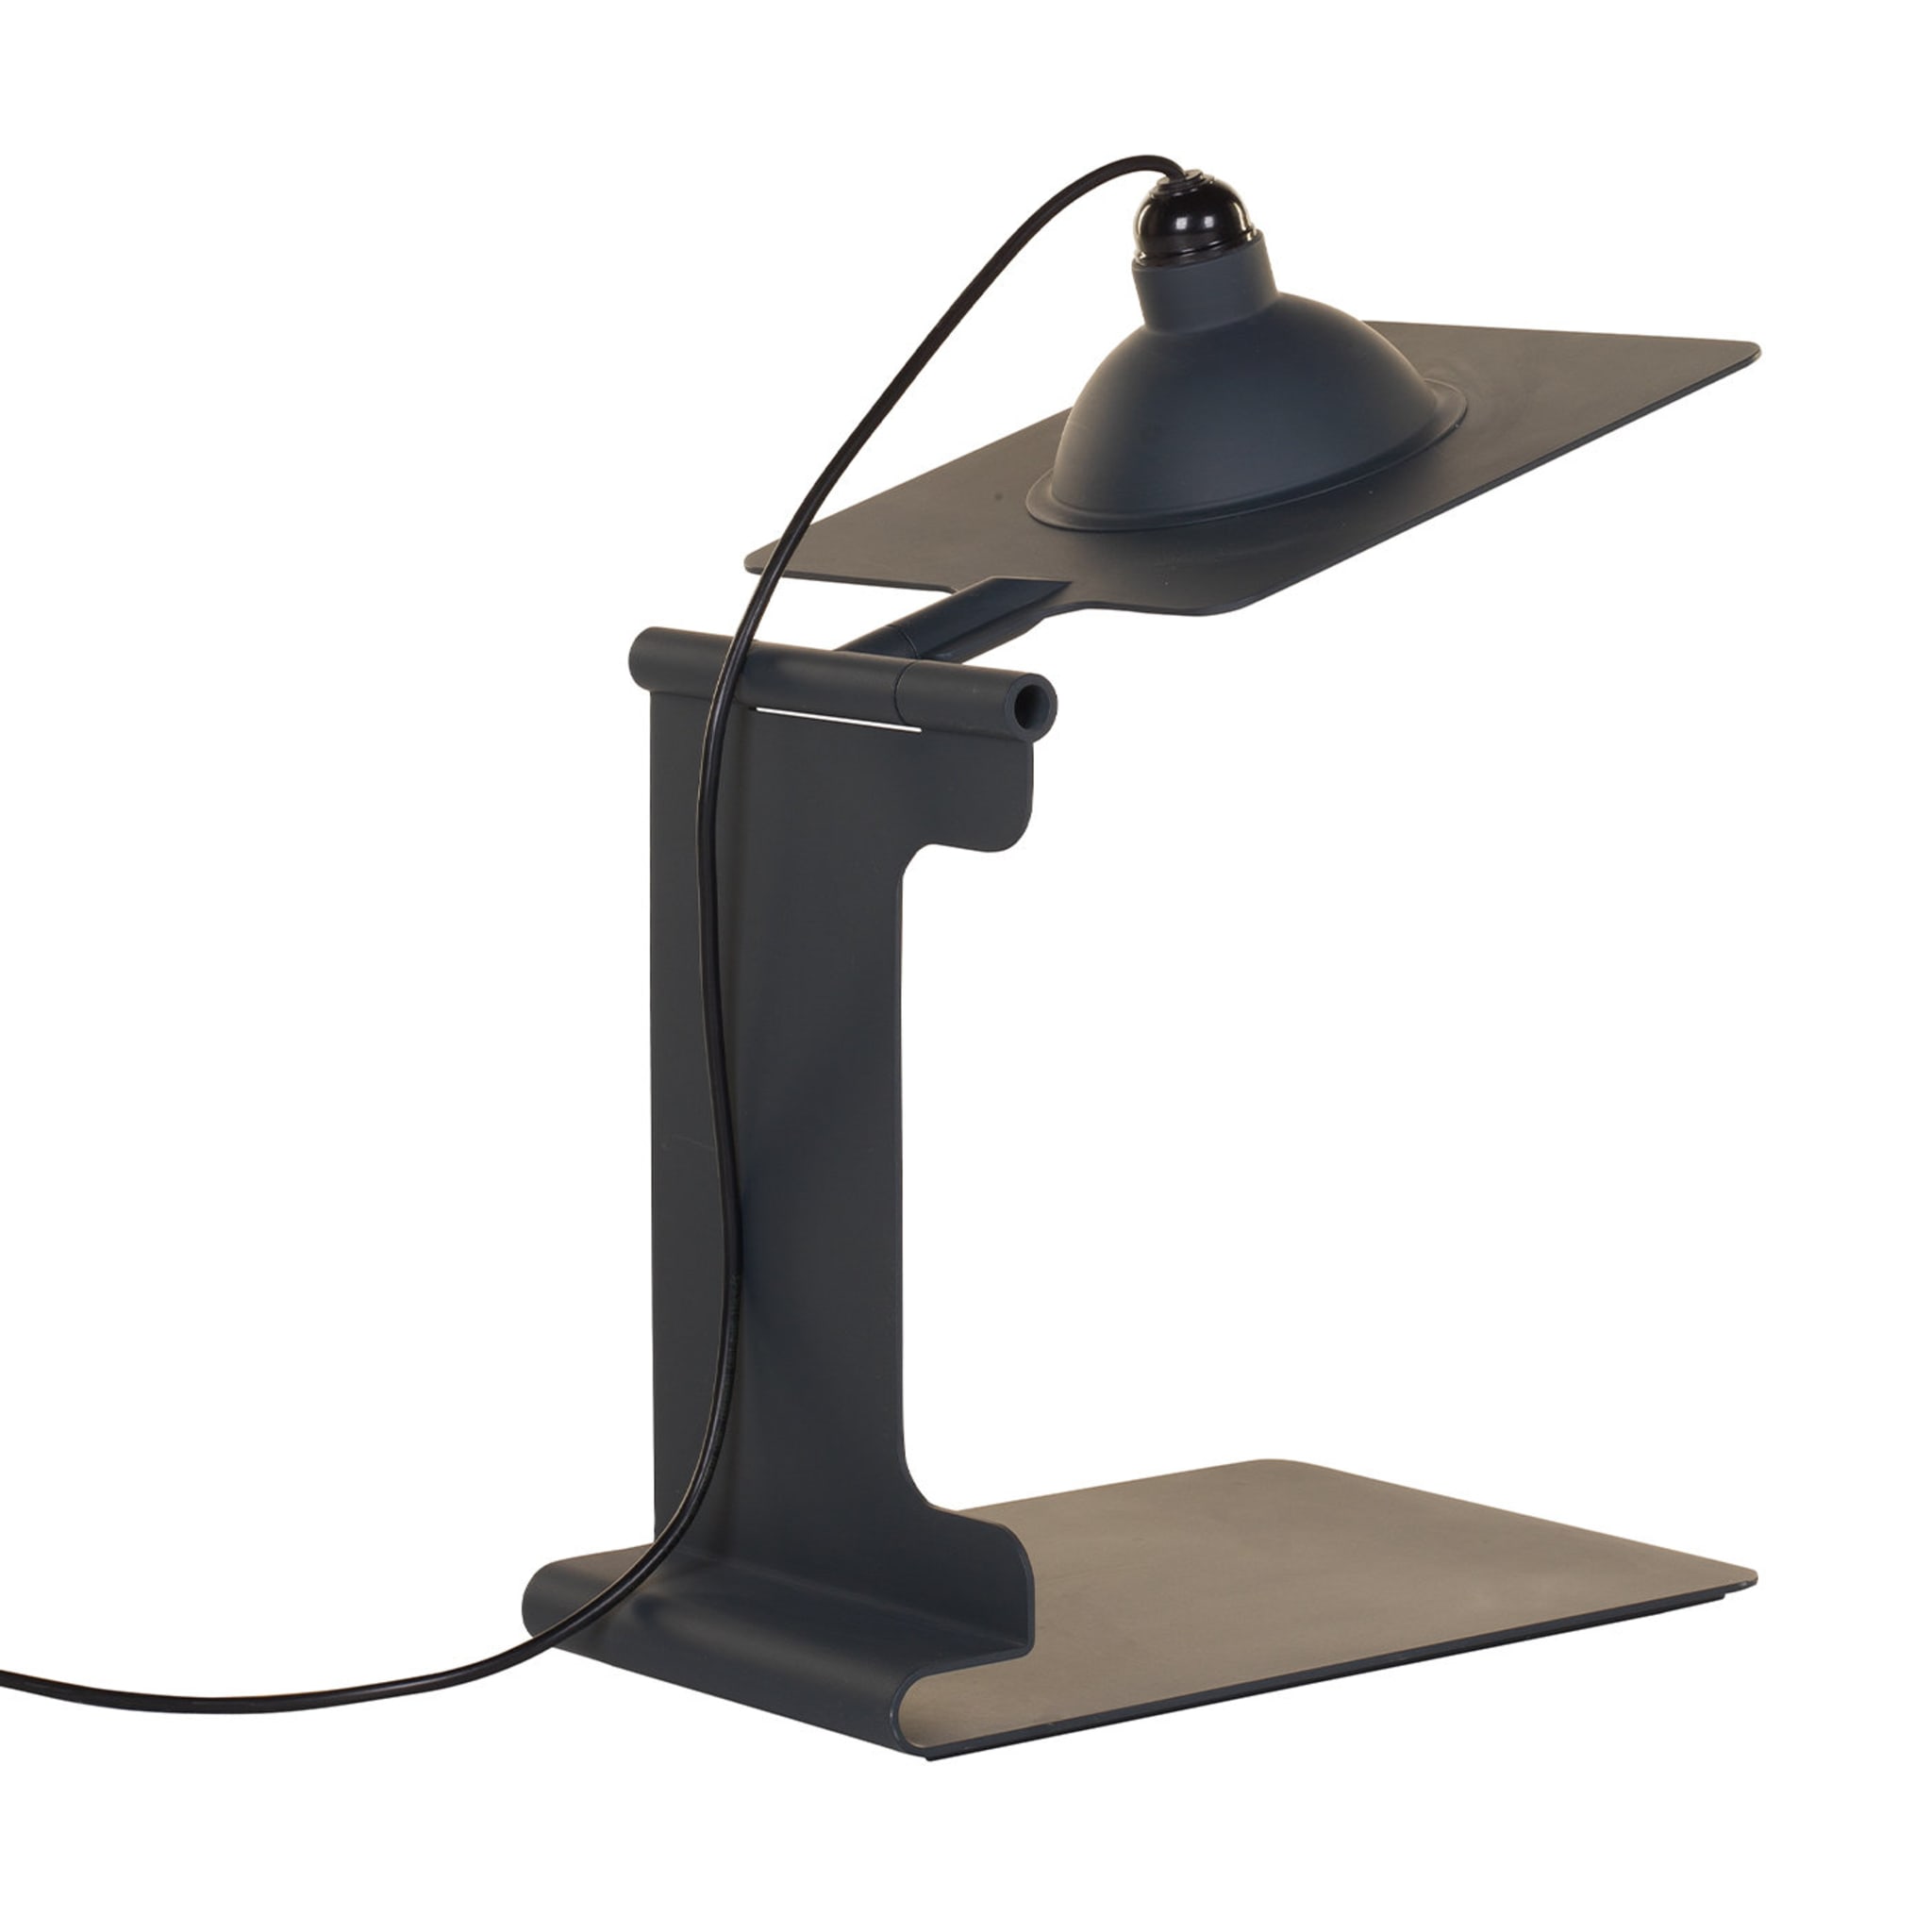 Scuderia Table Lamp by Studio Caccia Dominioni-Zucca & Associati - Alternative view 1